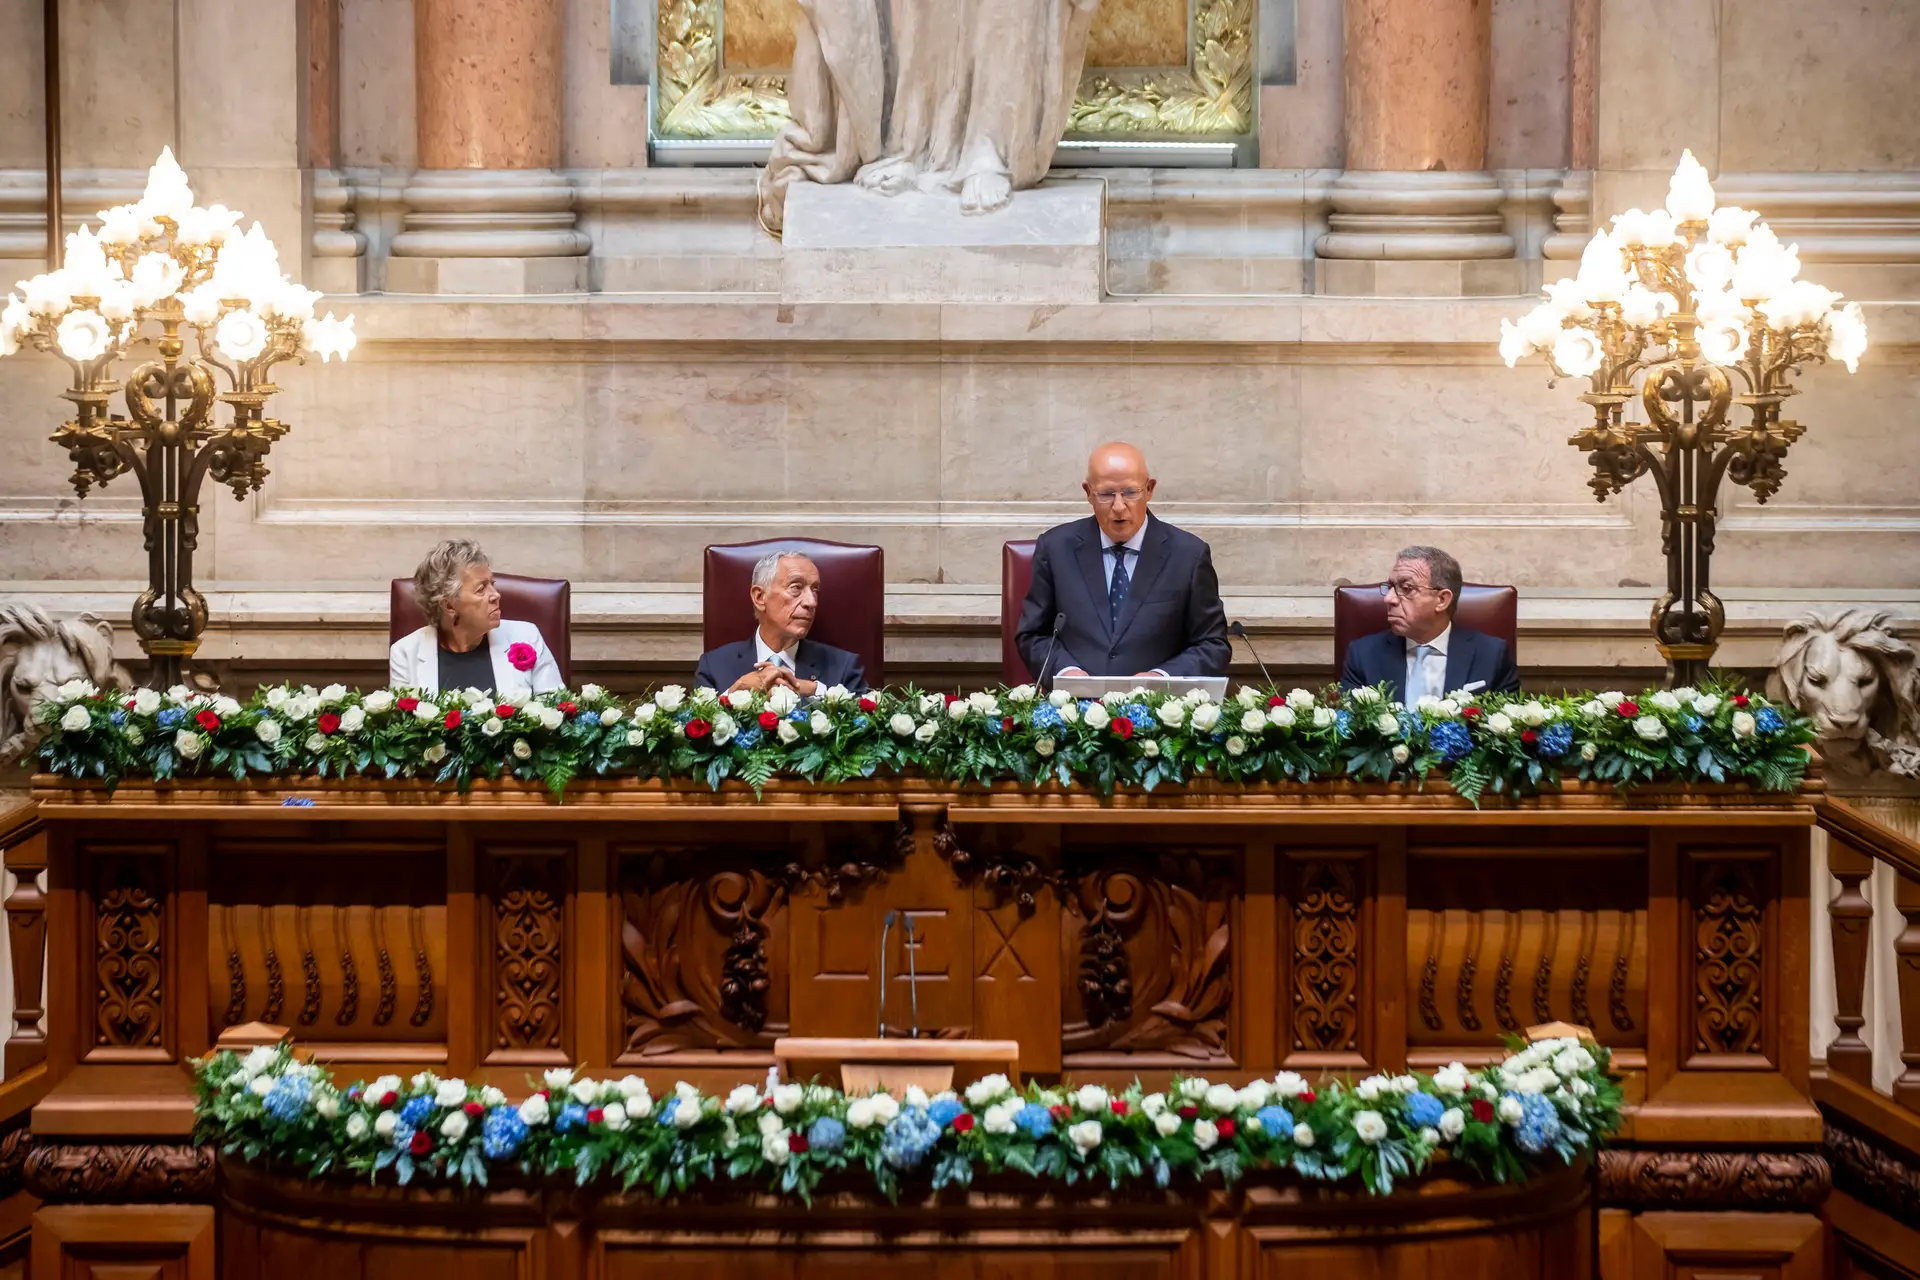 "Pela liberdade contra a intolerância": como o Parlamento celebrou os 200 anos da primeira Constituição portuguesa